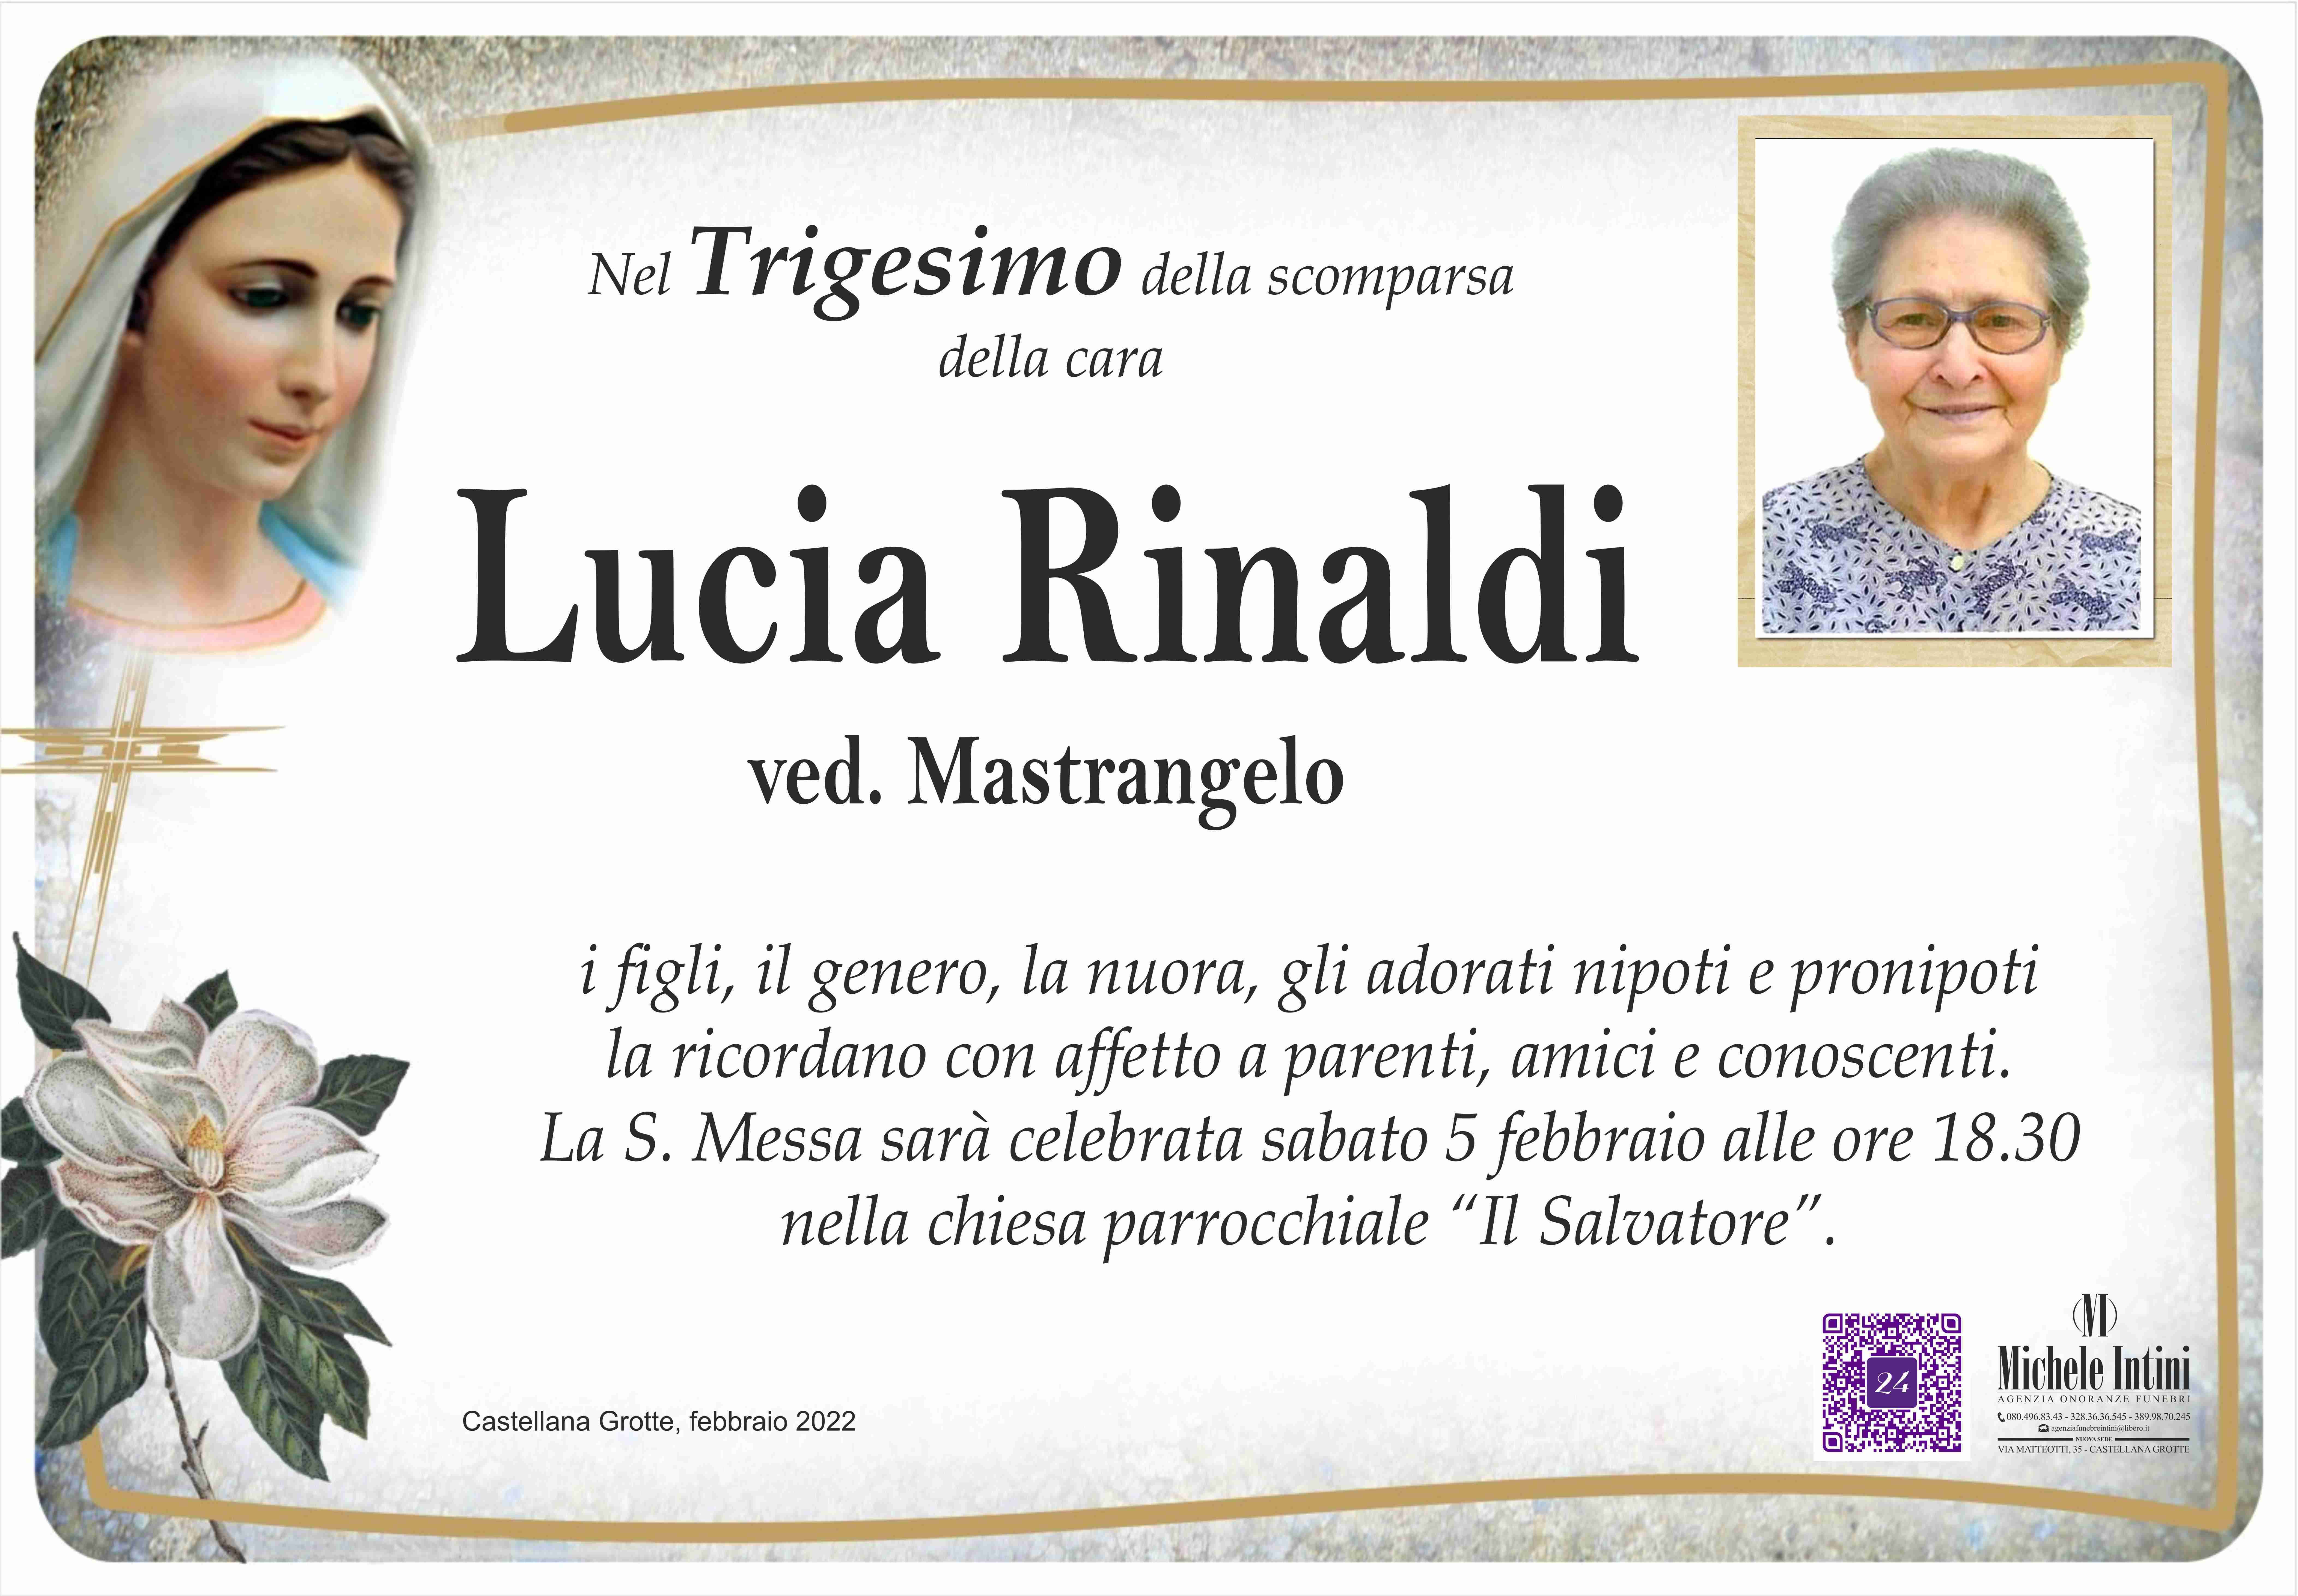 Lucia Rinaldi